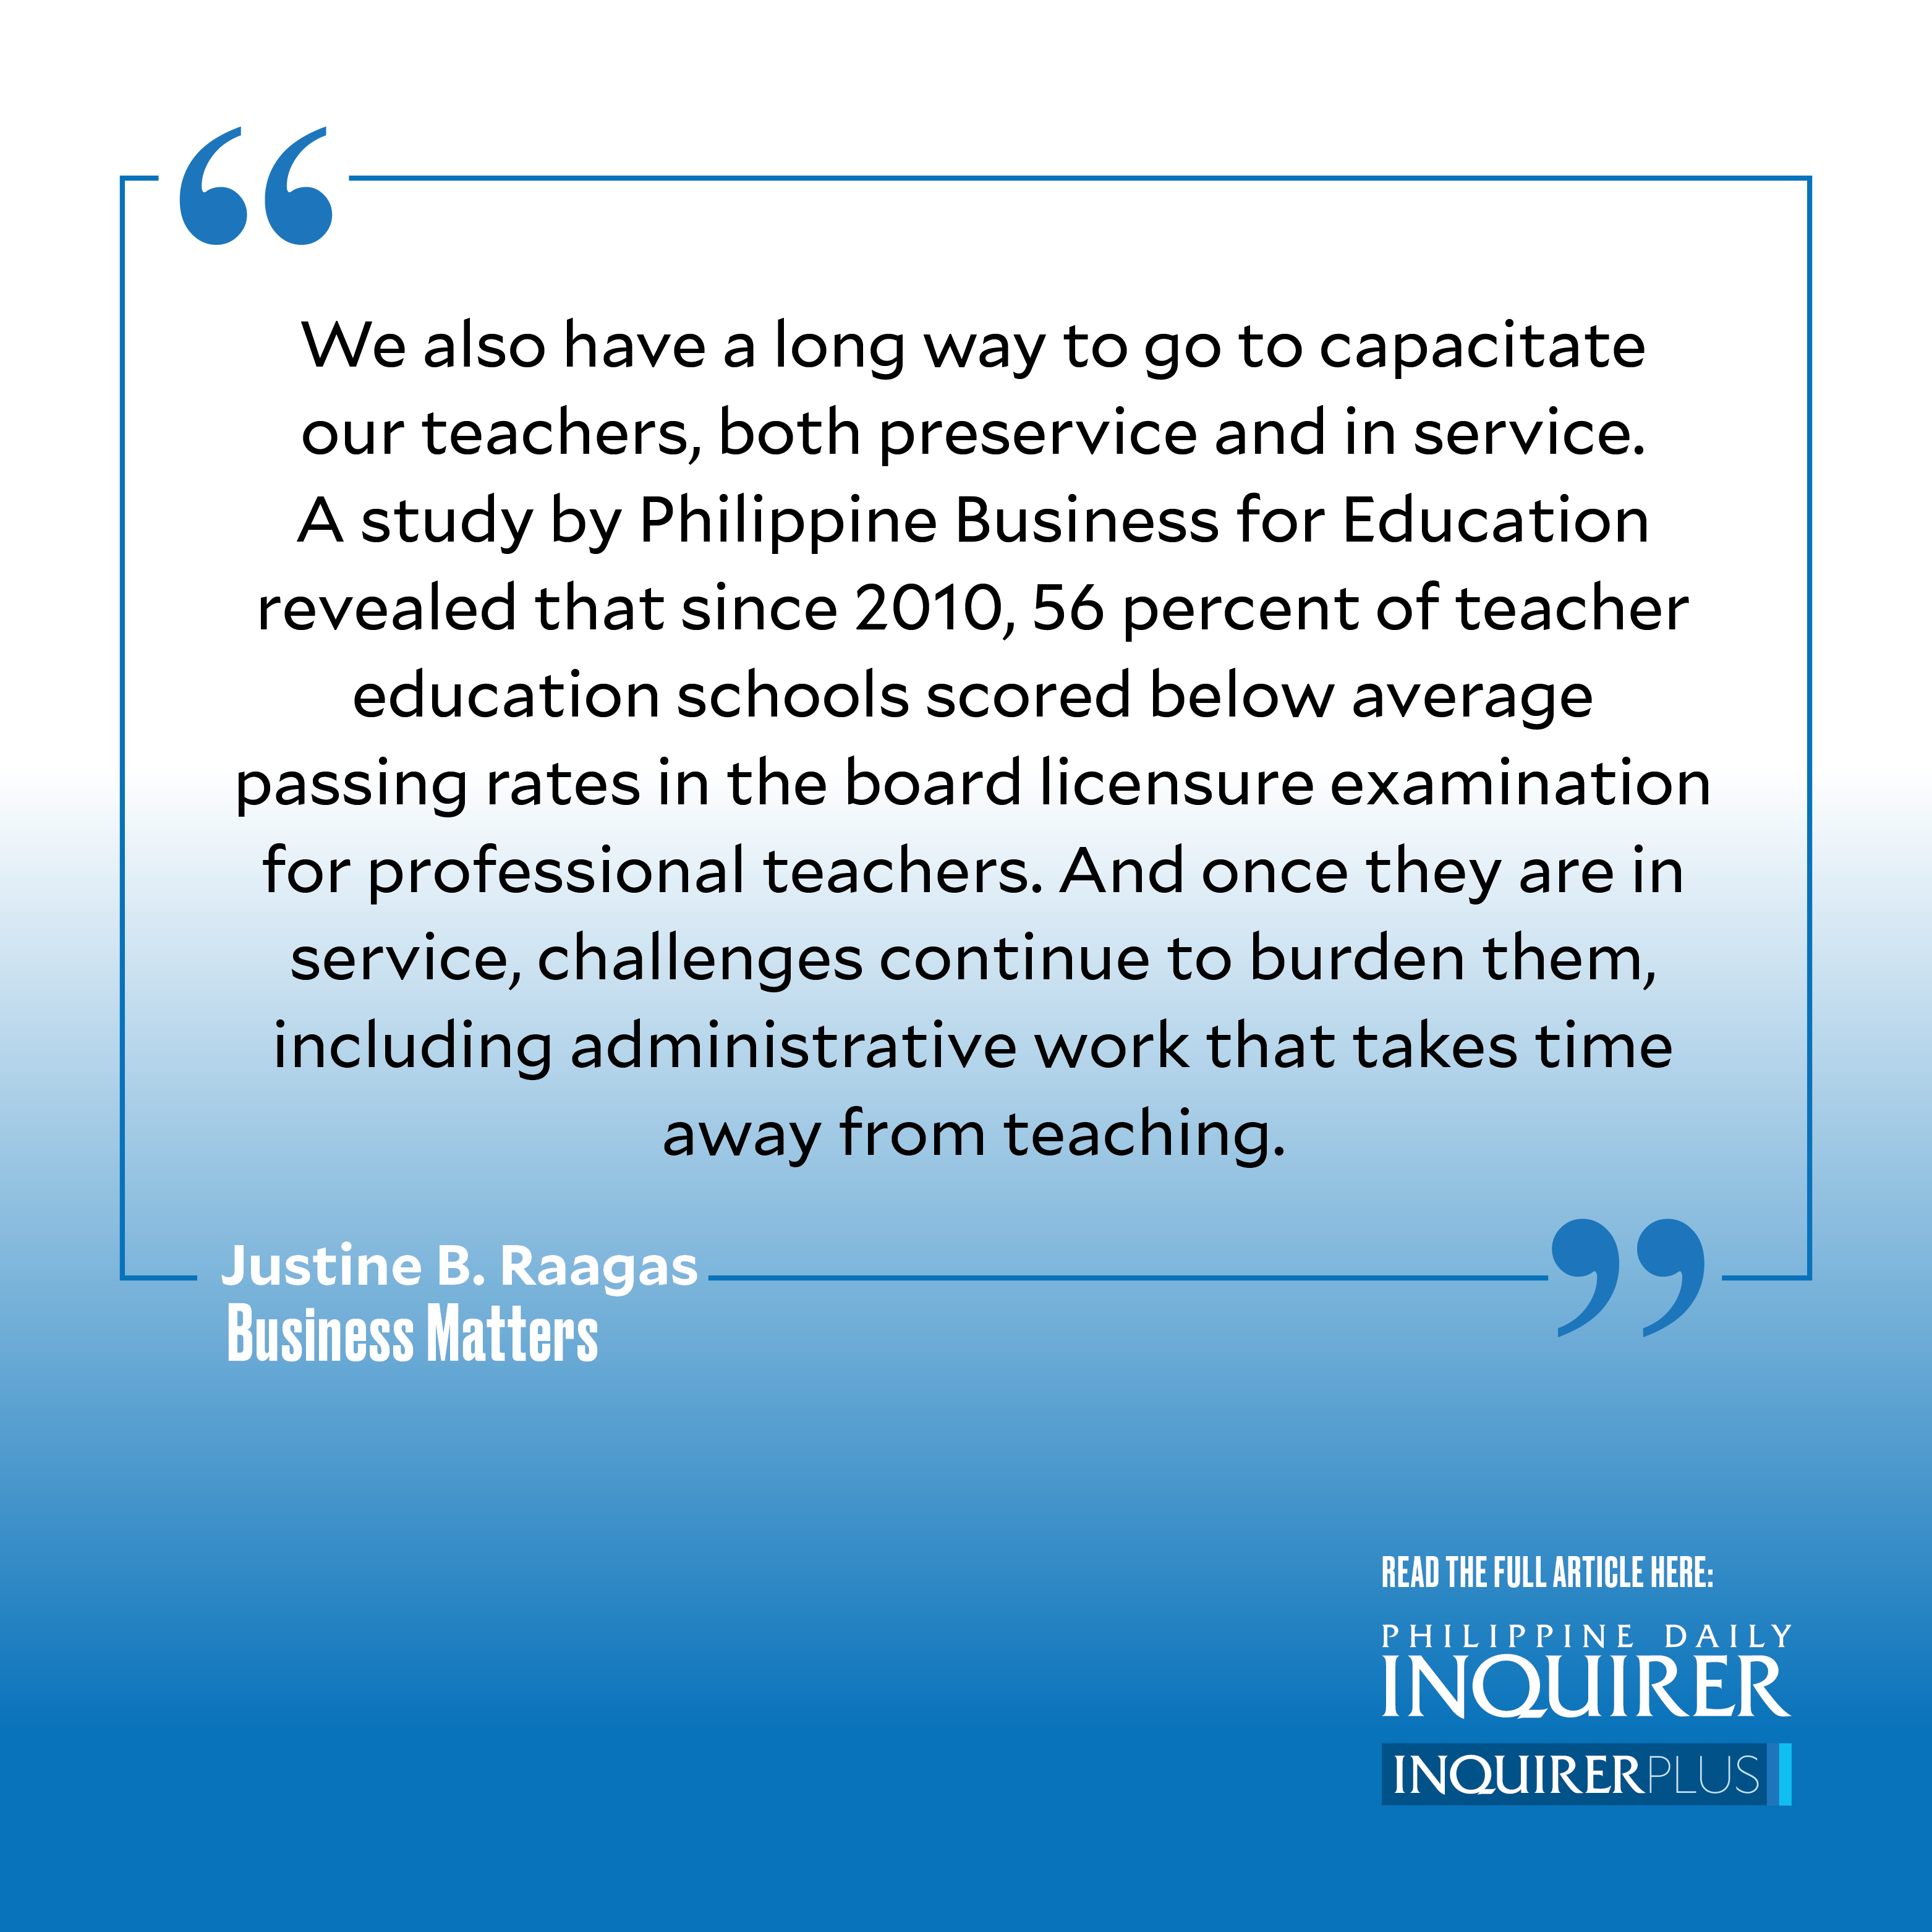 Reimagining Philippine education